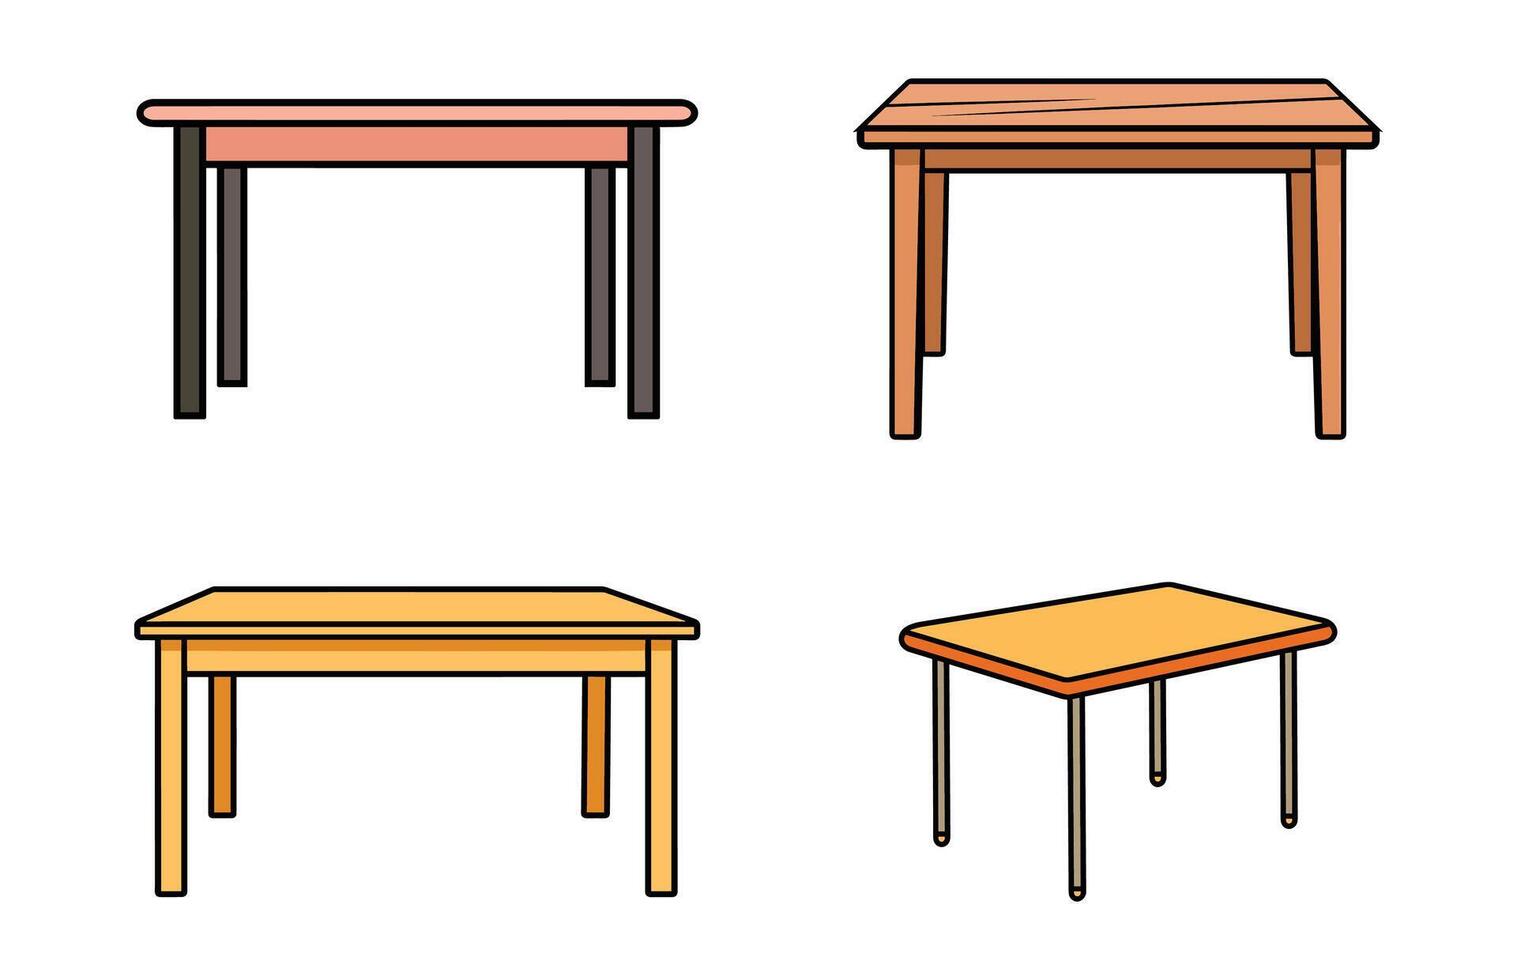 de madera mesa aislado ilustración colocar, mesa de madera hogar moderno decoración mueble vector conjunto